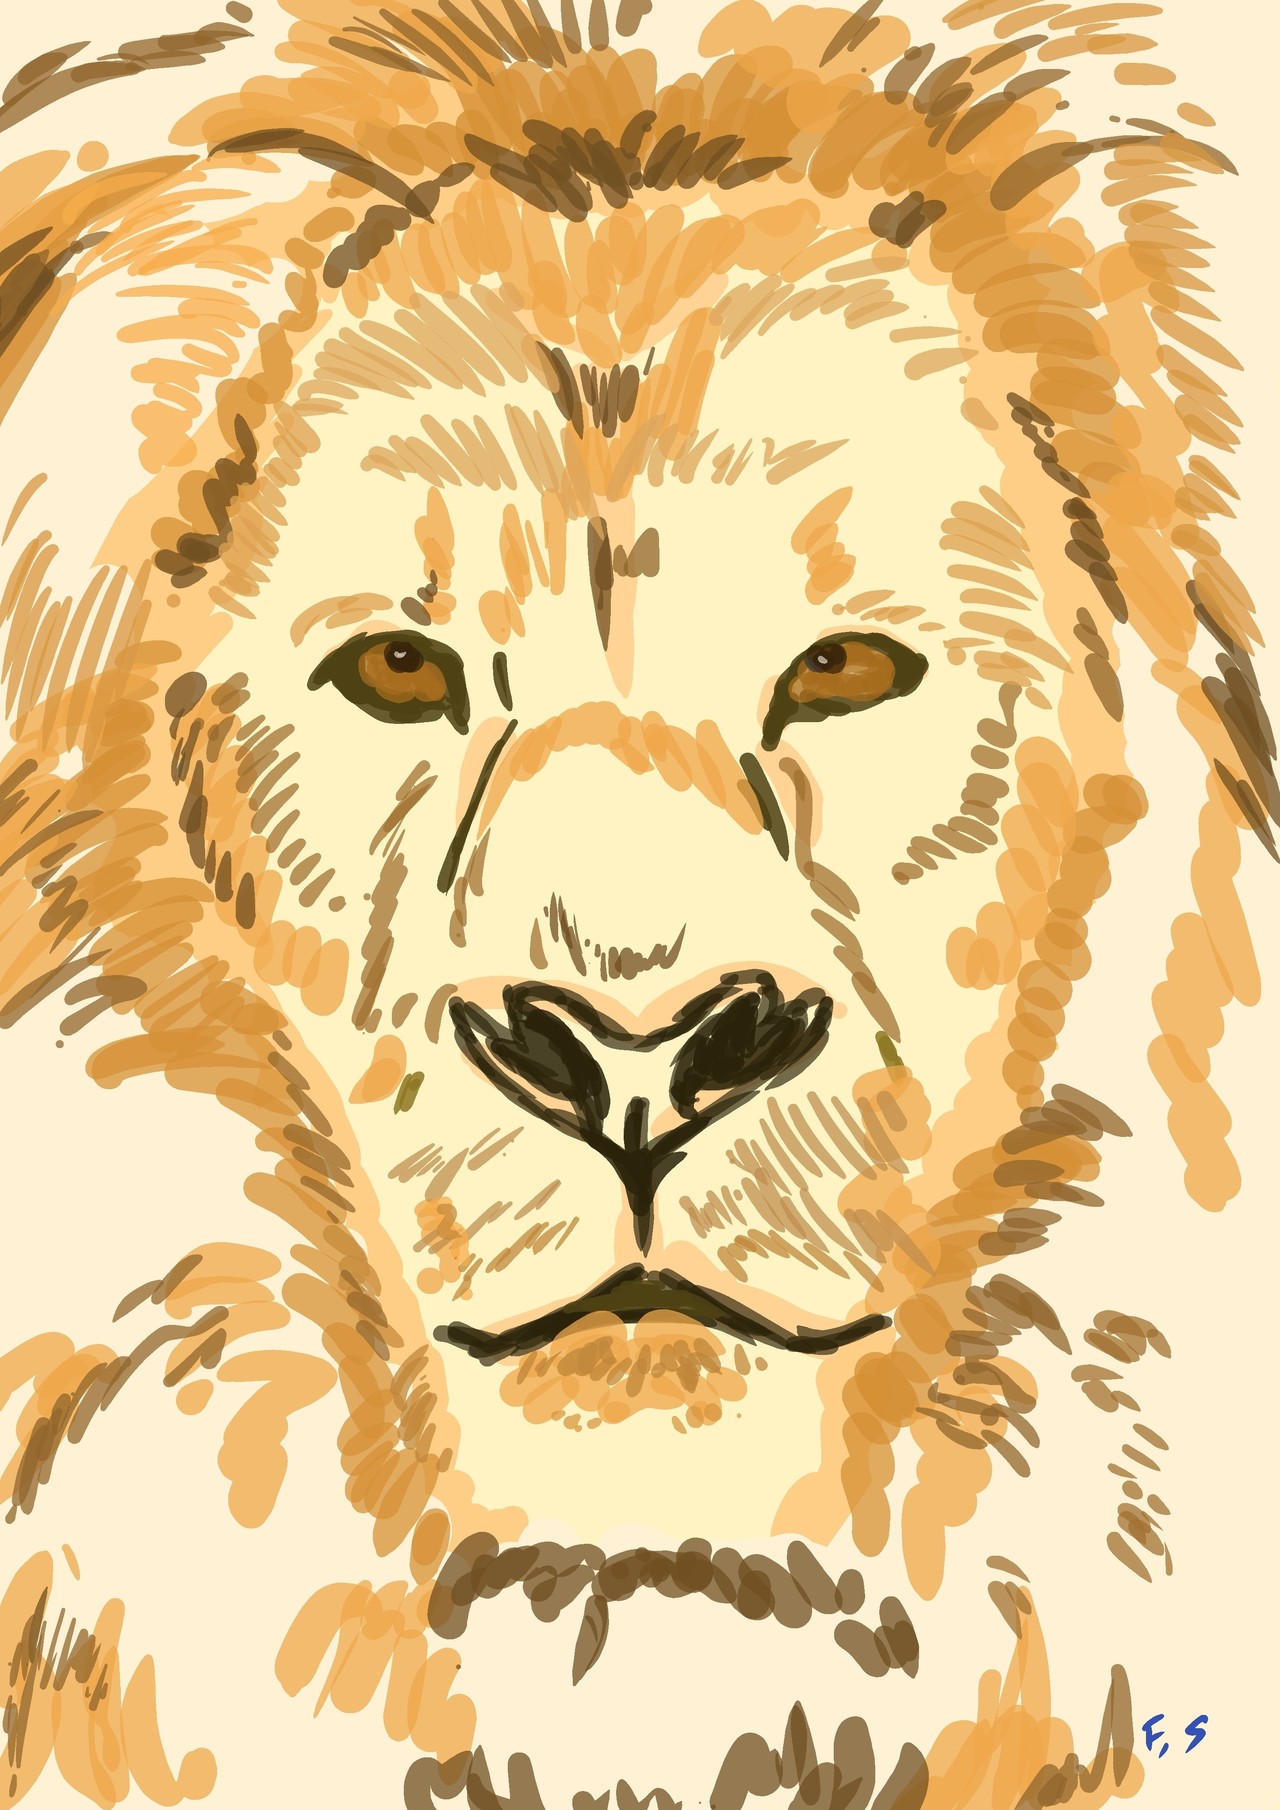 私は本当にそれが好きです ライオン 顔 イラスト 興味深い画像の多様性